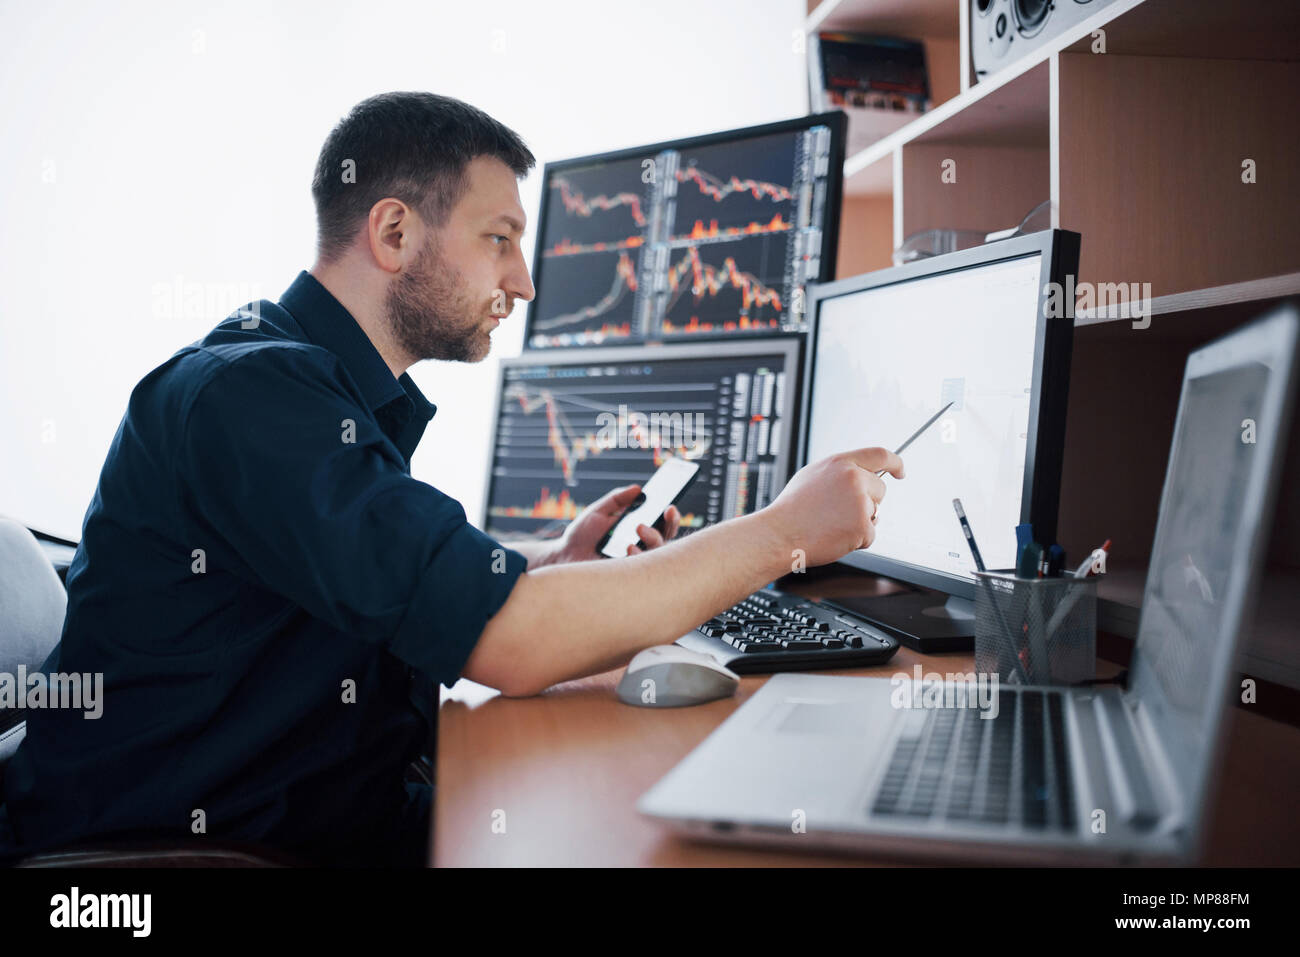 Courtier en shirt travaille dans une salle de surveillance avec des écrans. Forex Trading Bourse Finances Concept graphique. Les stocks d'affaires en ligne trading Banque D'Images